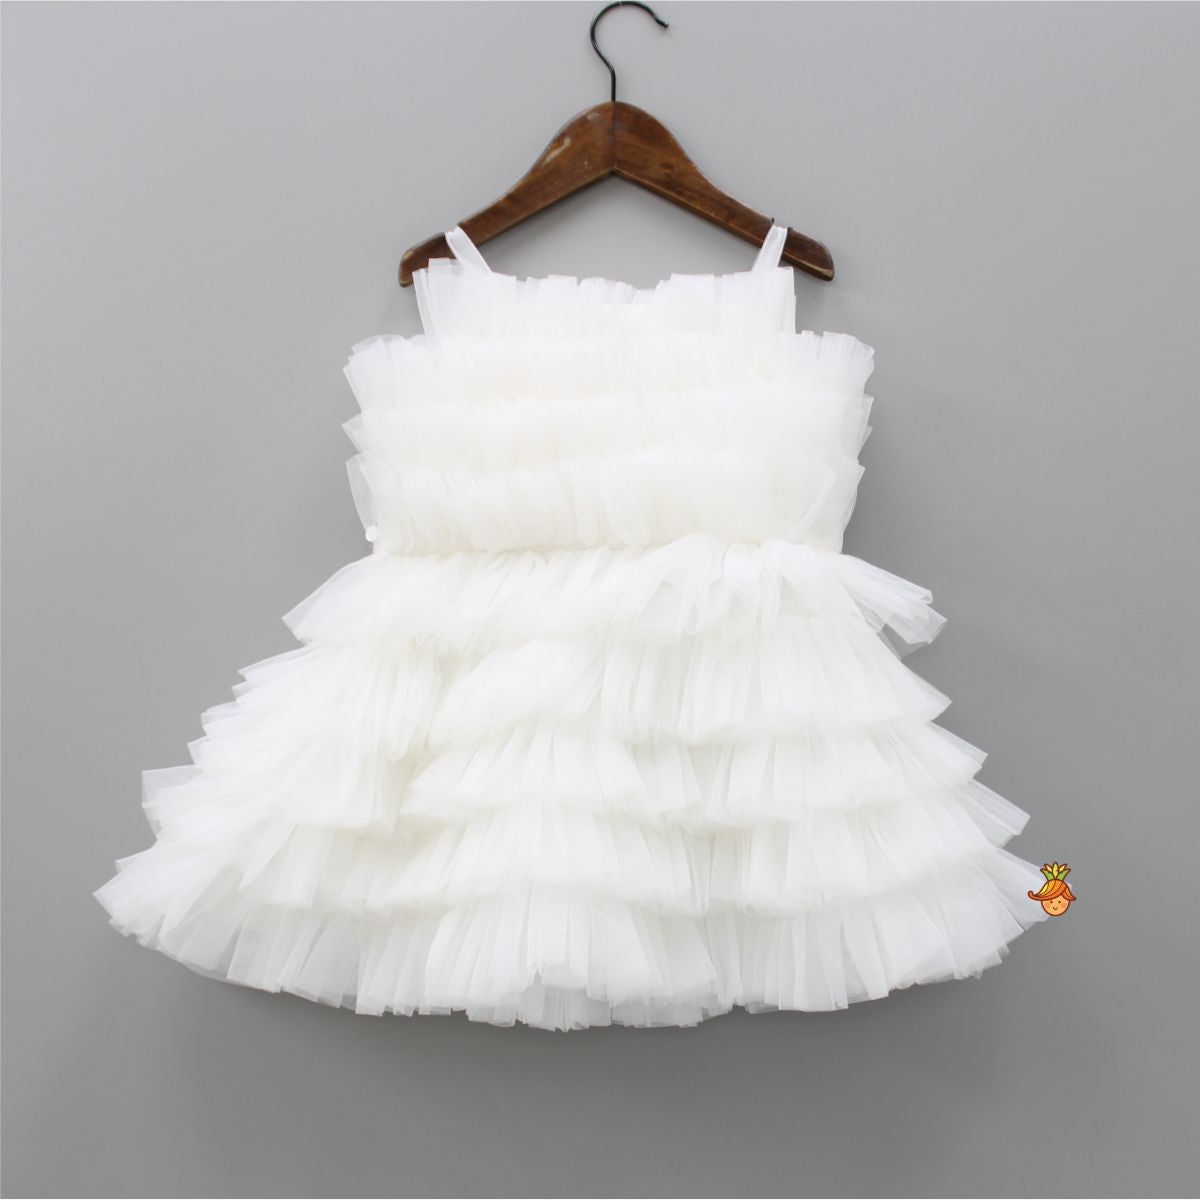 Stunning Ruffled White Dress